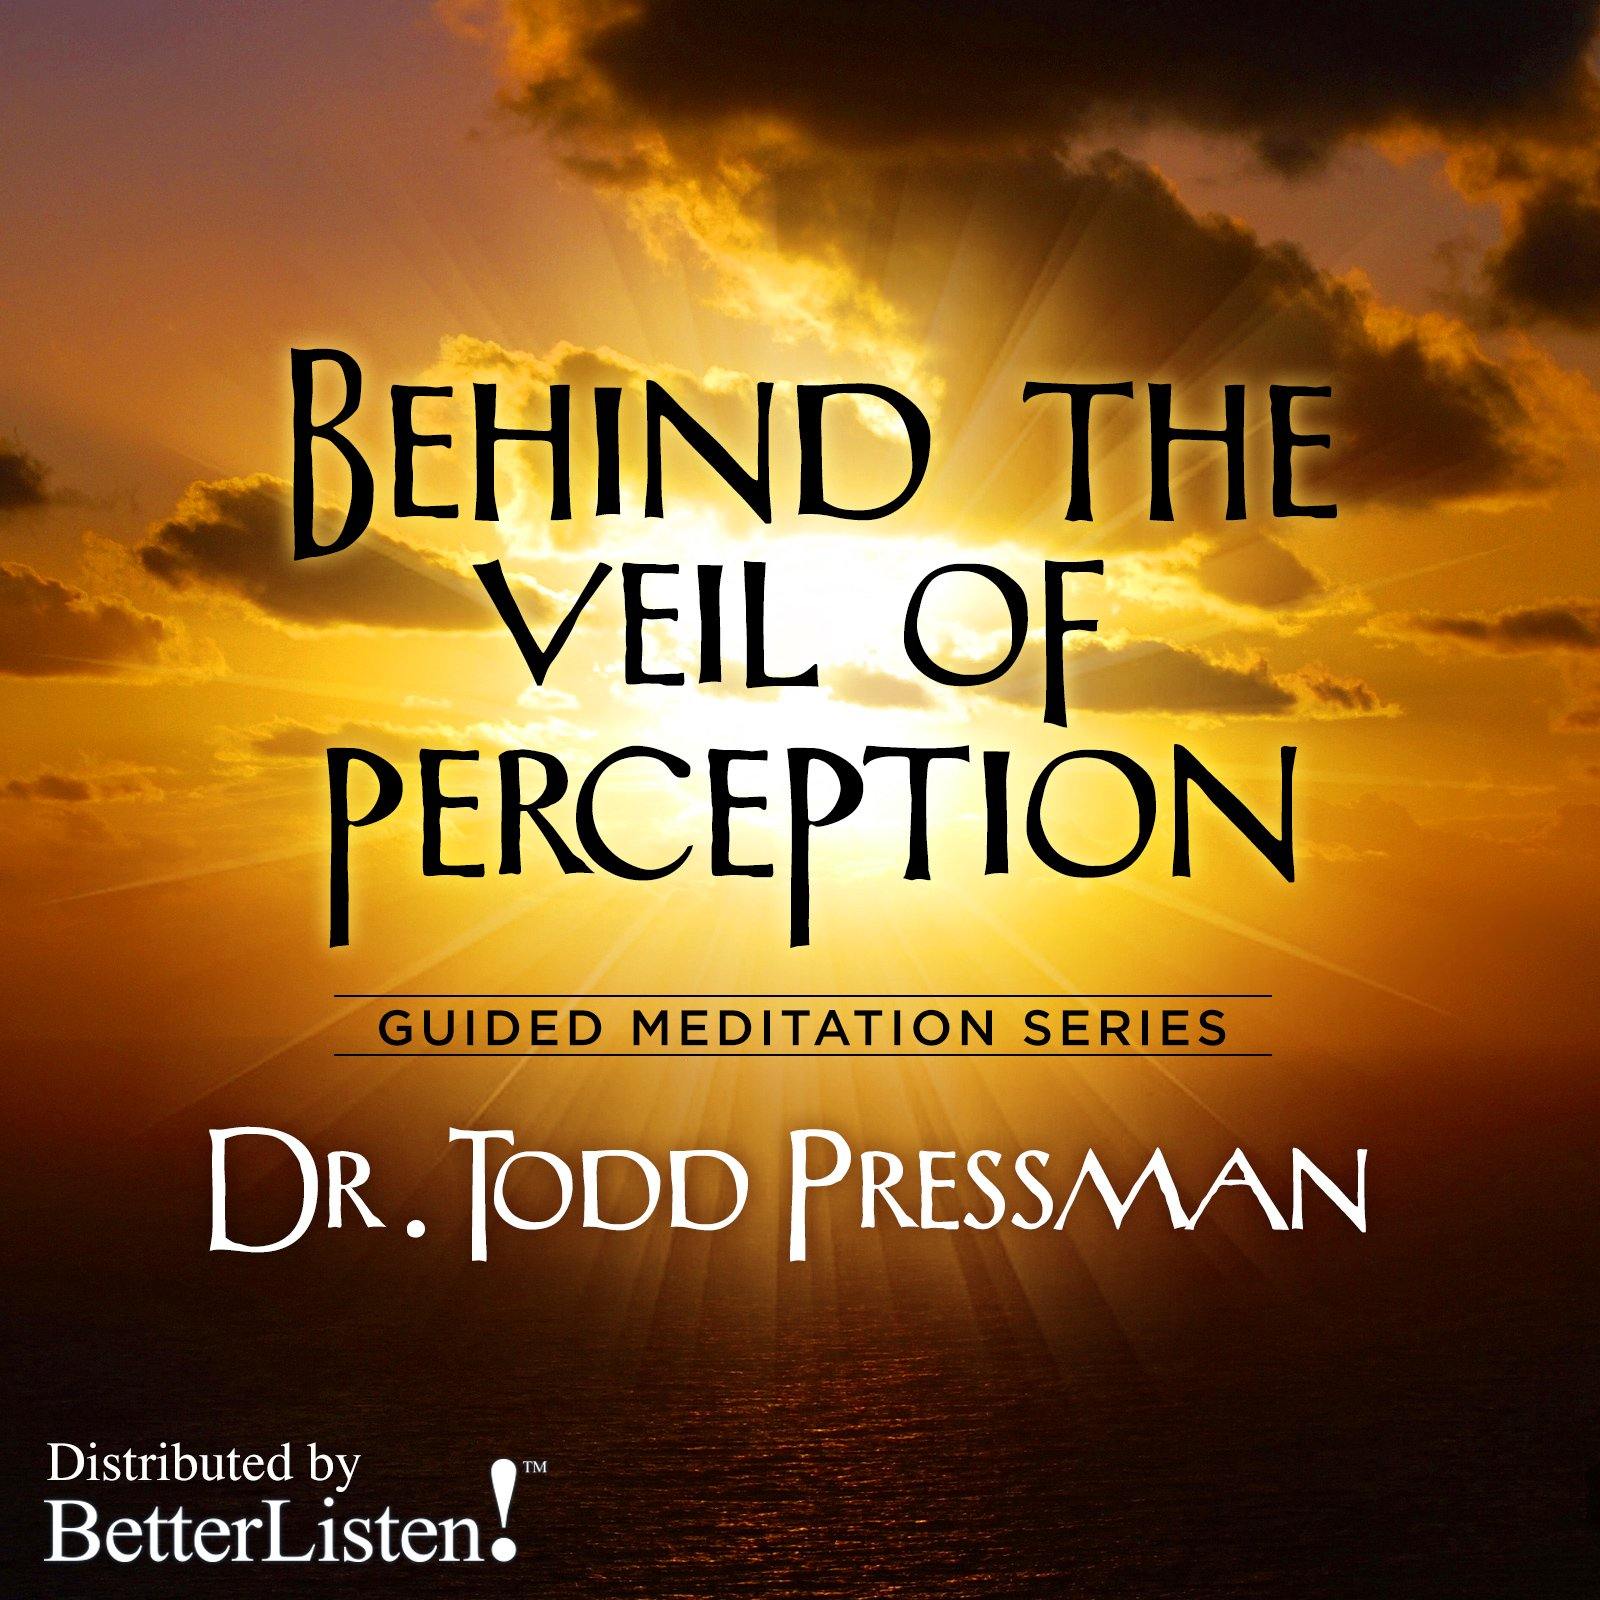 Behind the Veil of Perception by Dr. Todd Pressman Audio Program BetterListen! - BetterListen!